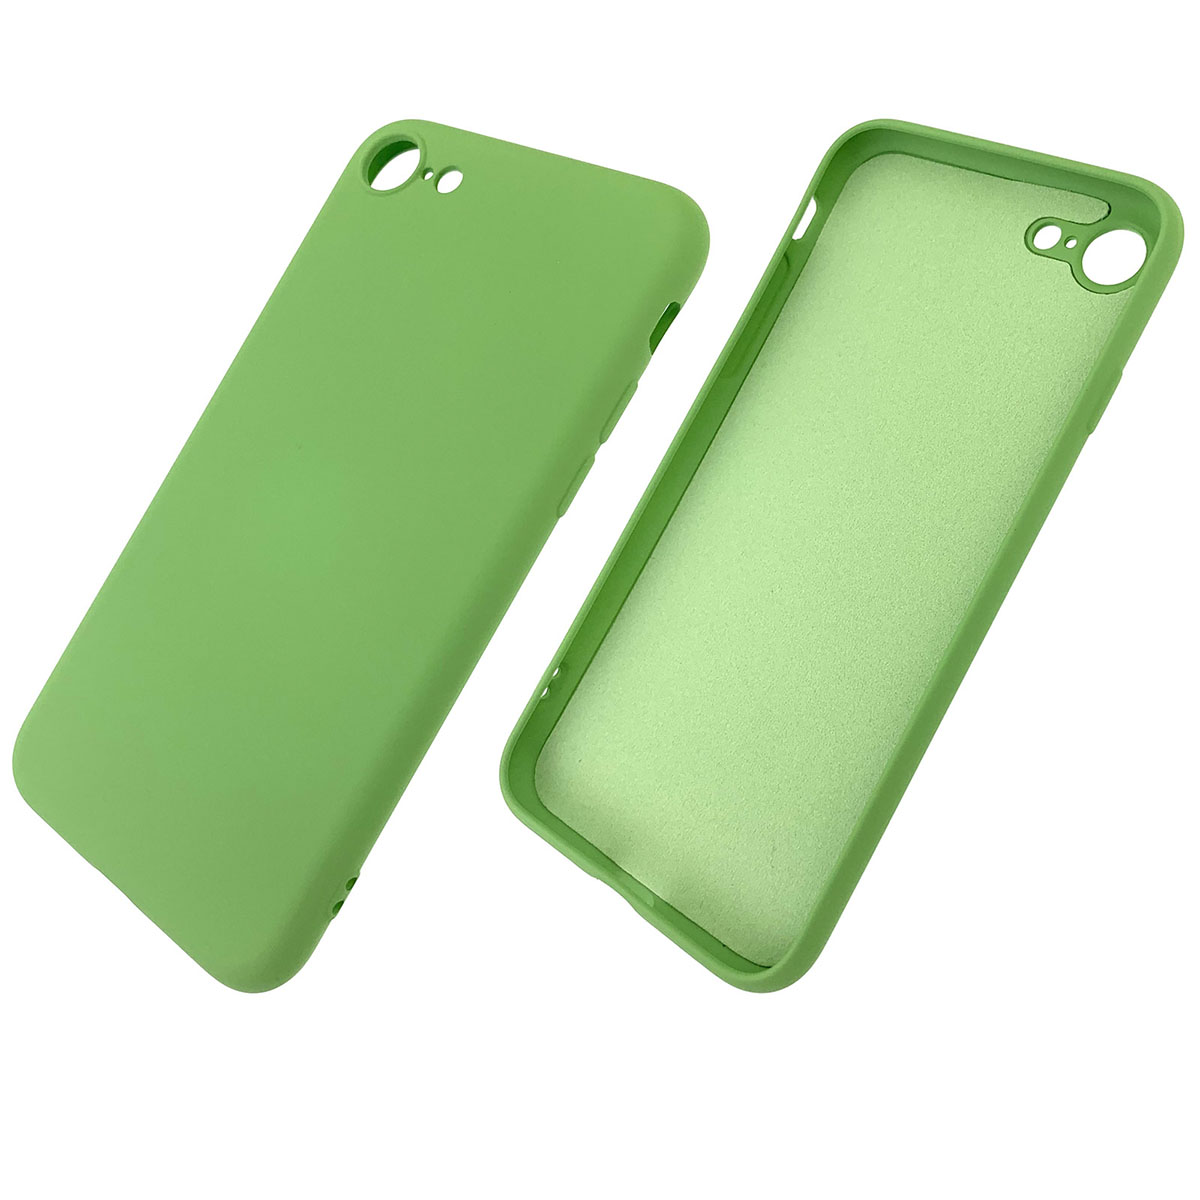 Чехол накладка для APPLE iPhone 7, iPhone 8, силикон, цвет фисташковый.